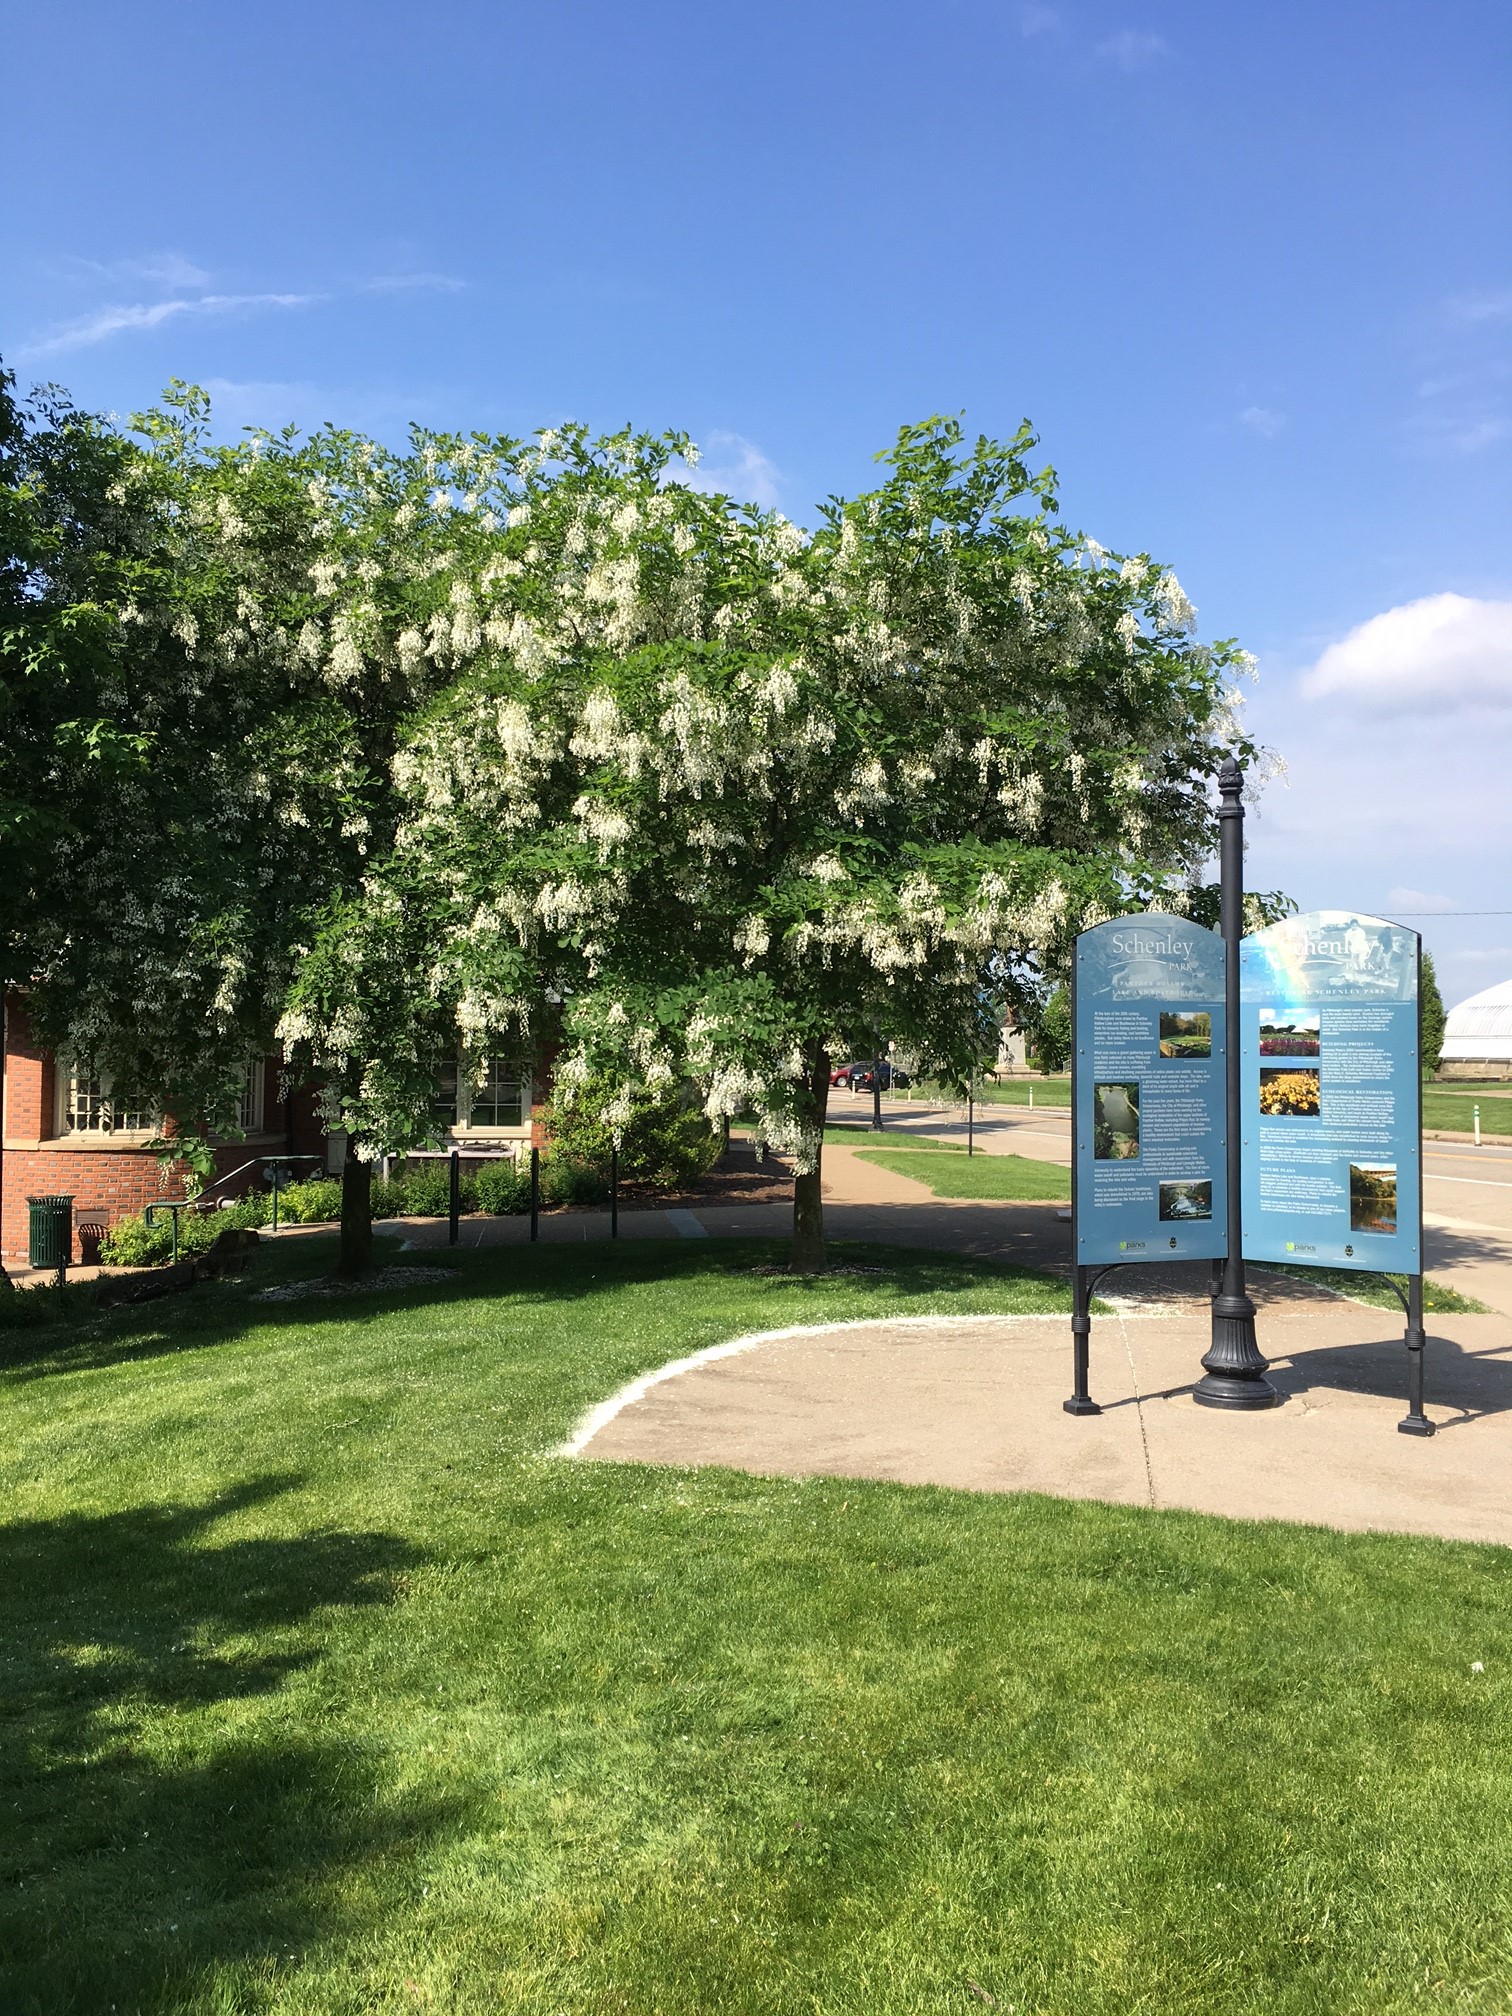 Schenley Park Visitor Center Yellowwood tree bloom white flowers interprative park sign